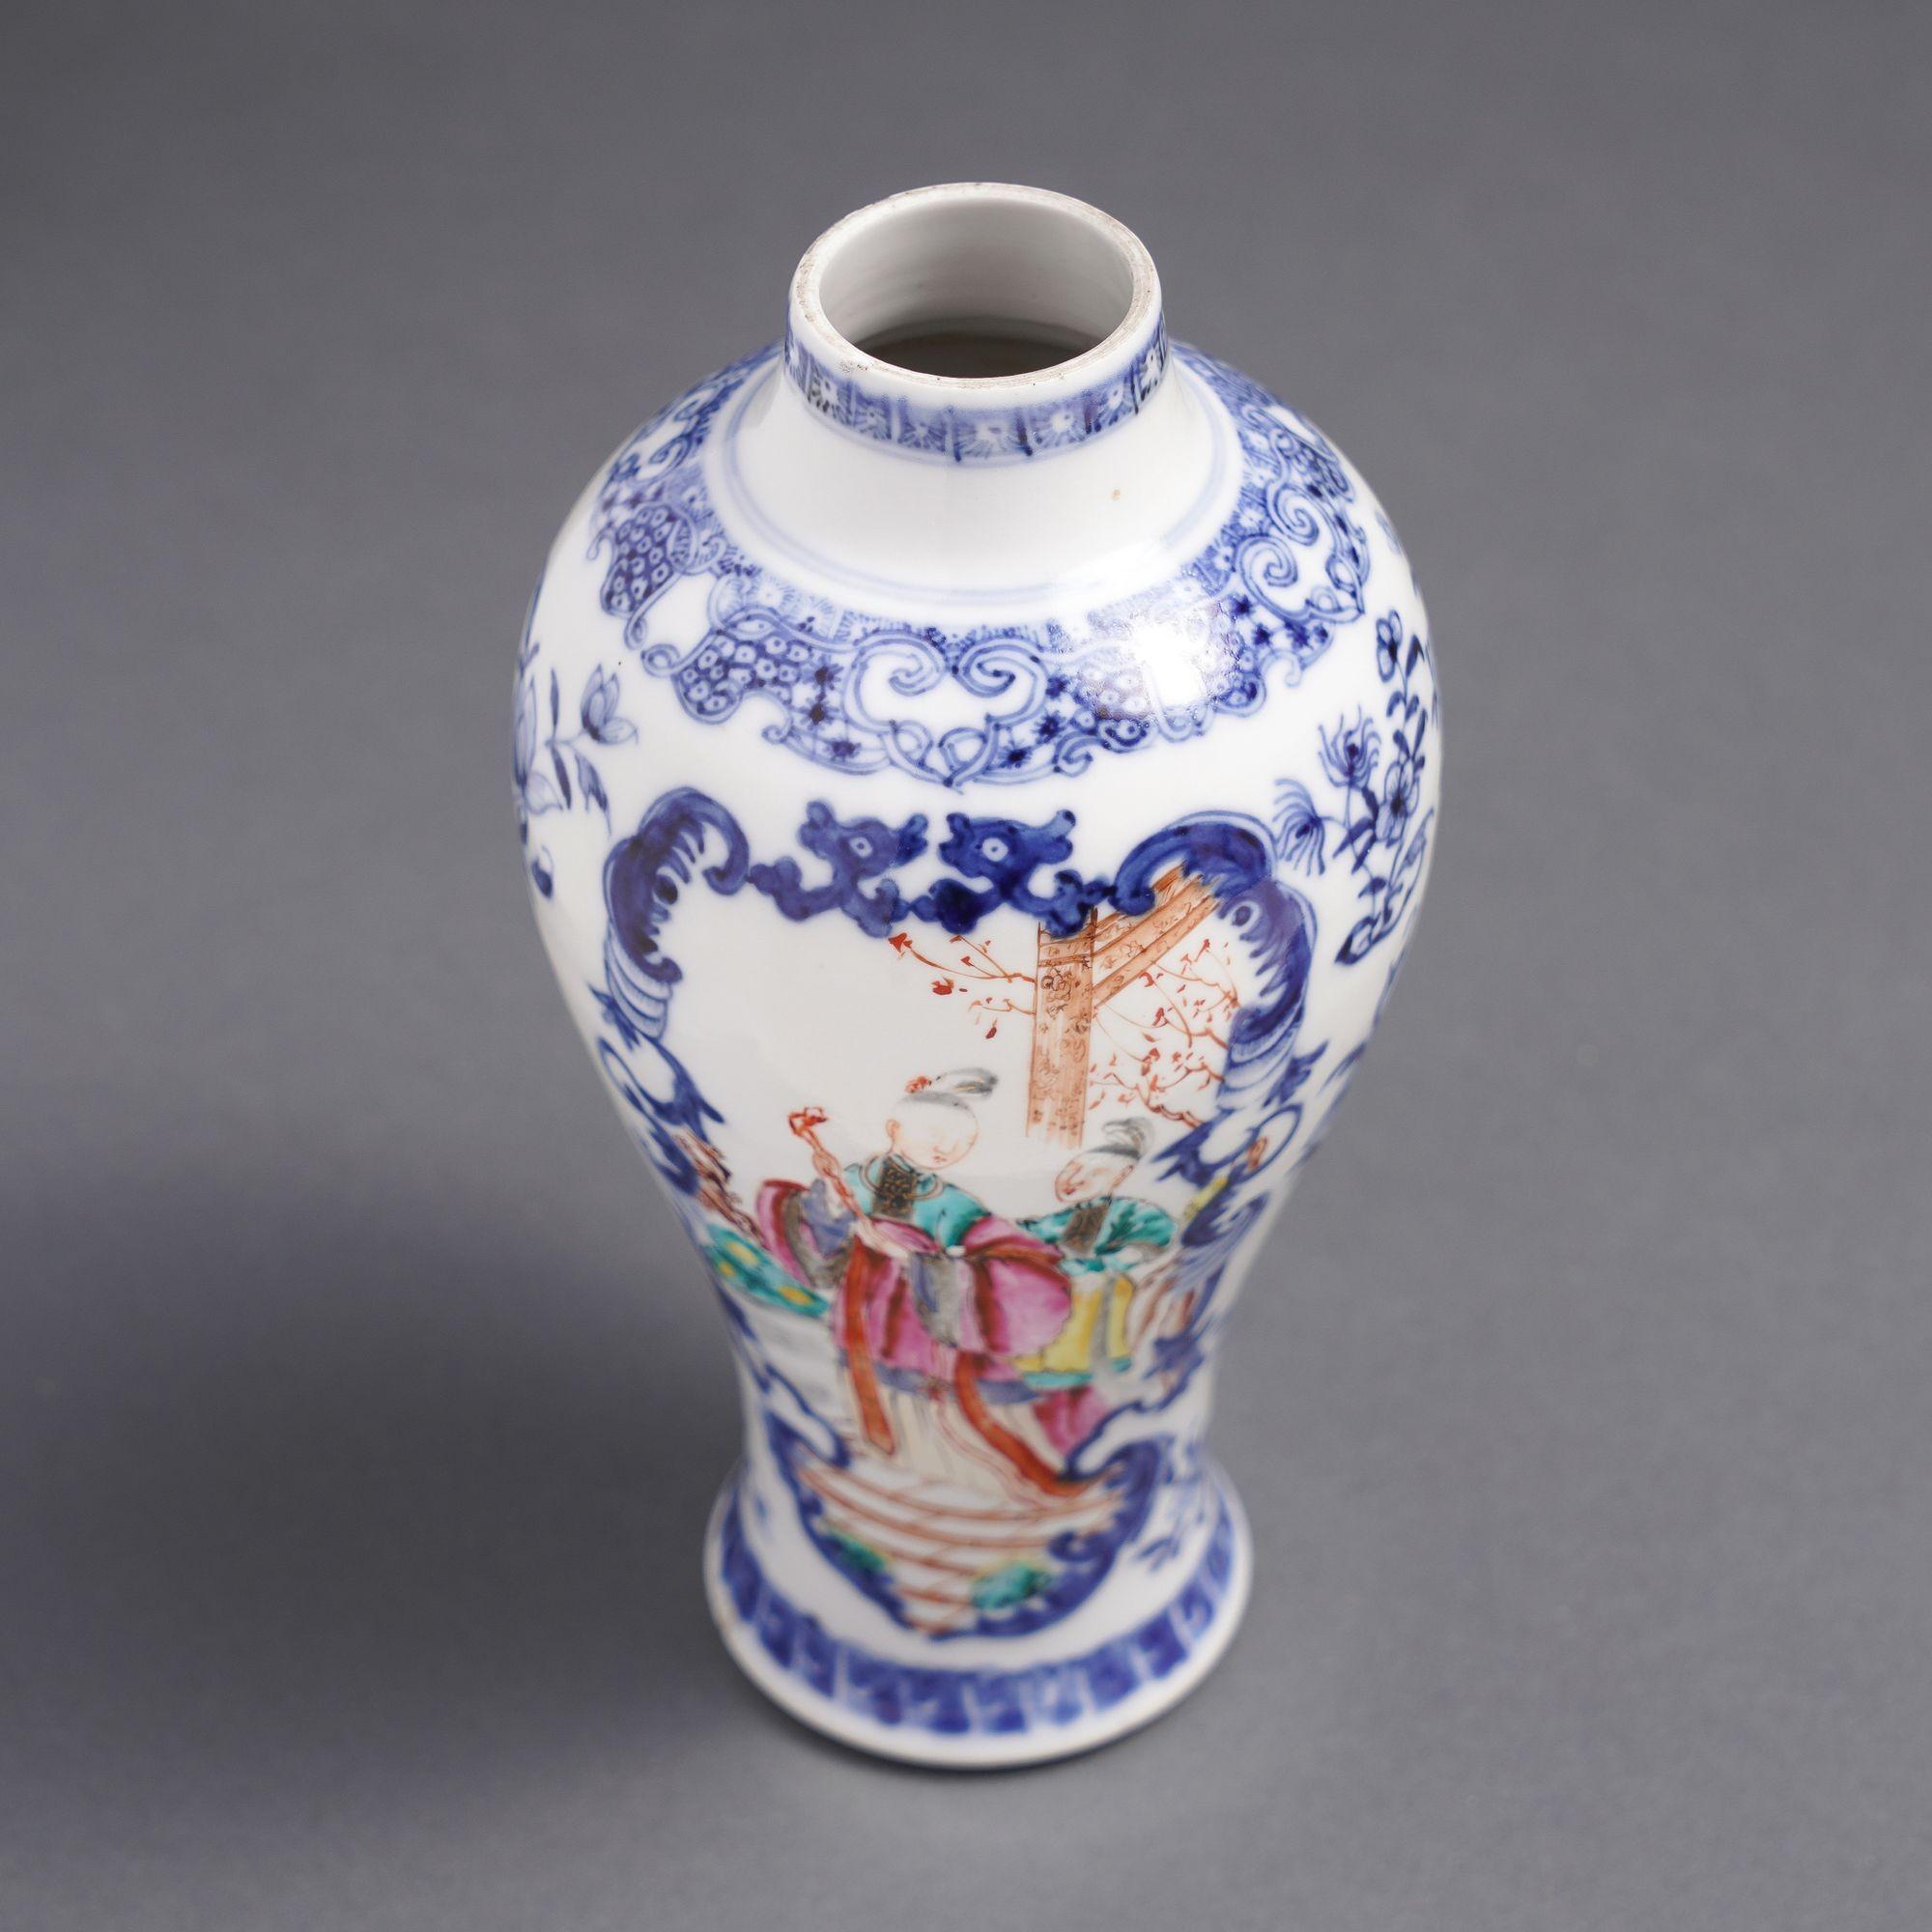 Porcelain Chinese export baluster form garniture vase with figural scenes, c. 1780 For Sale